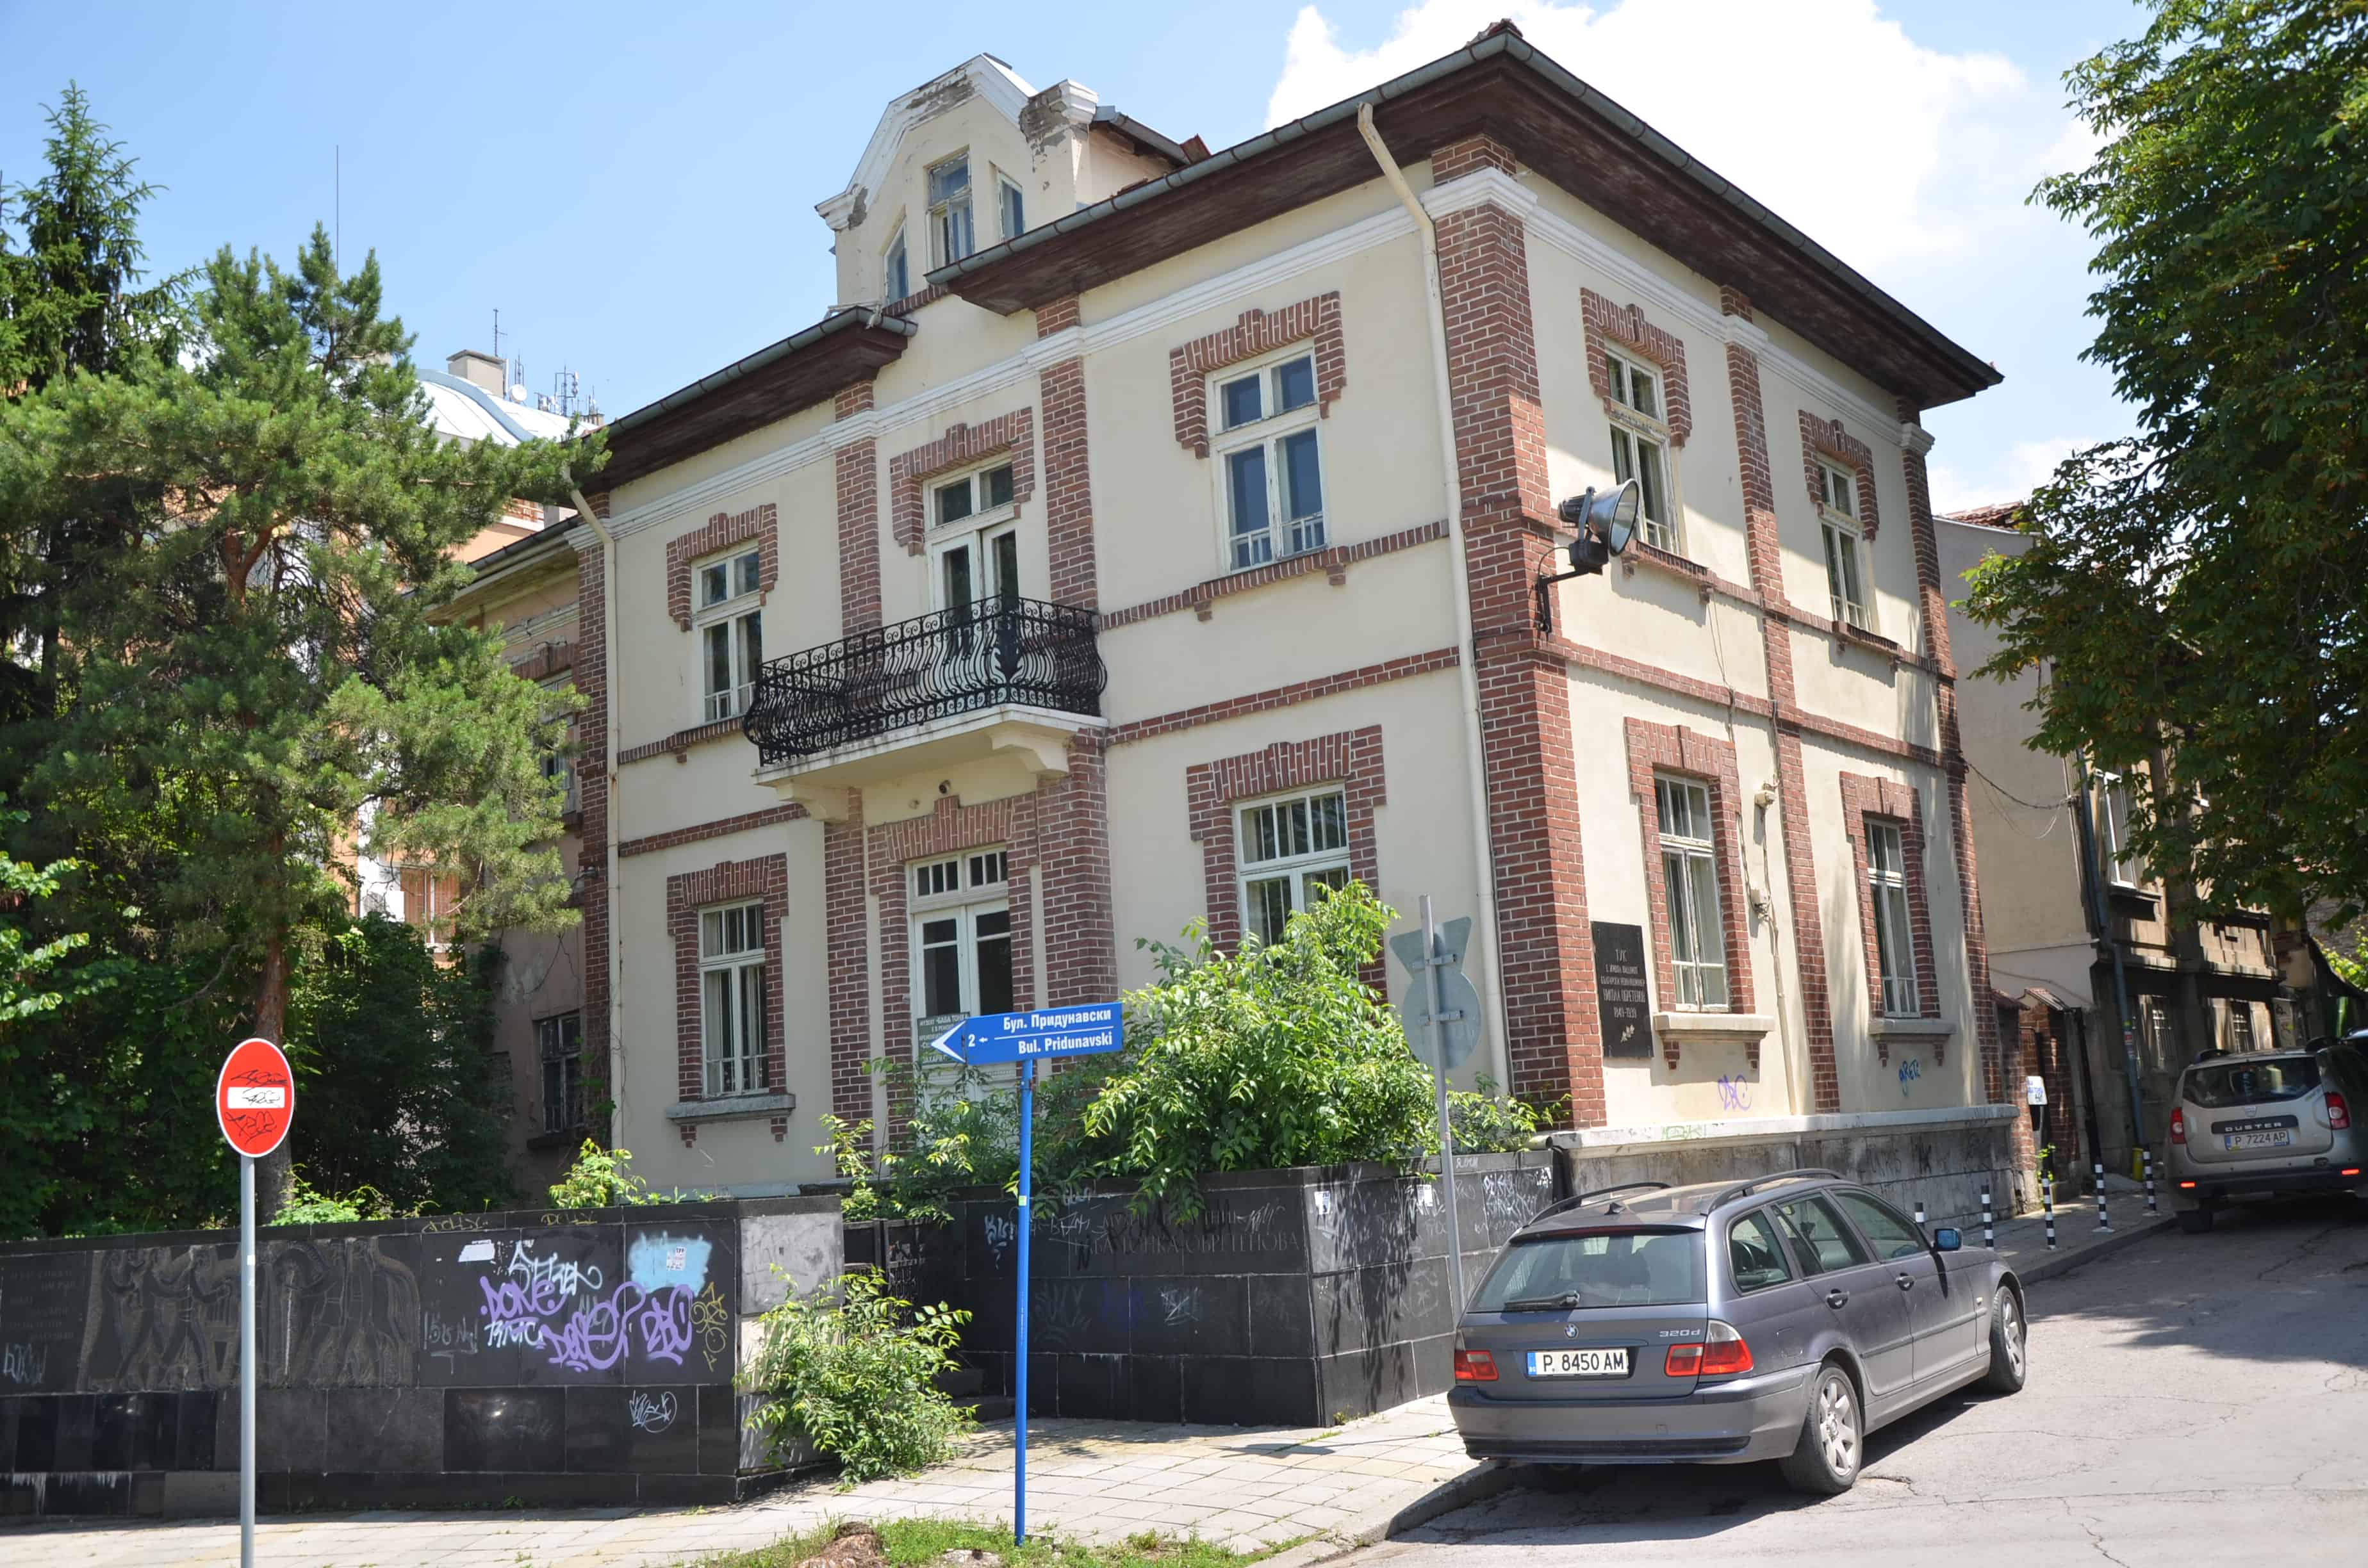 Nikola Obretenov house in Ruse, Bulgaria